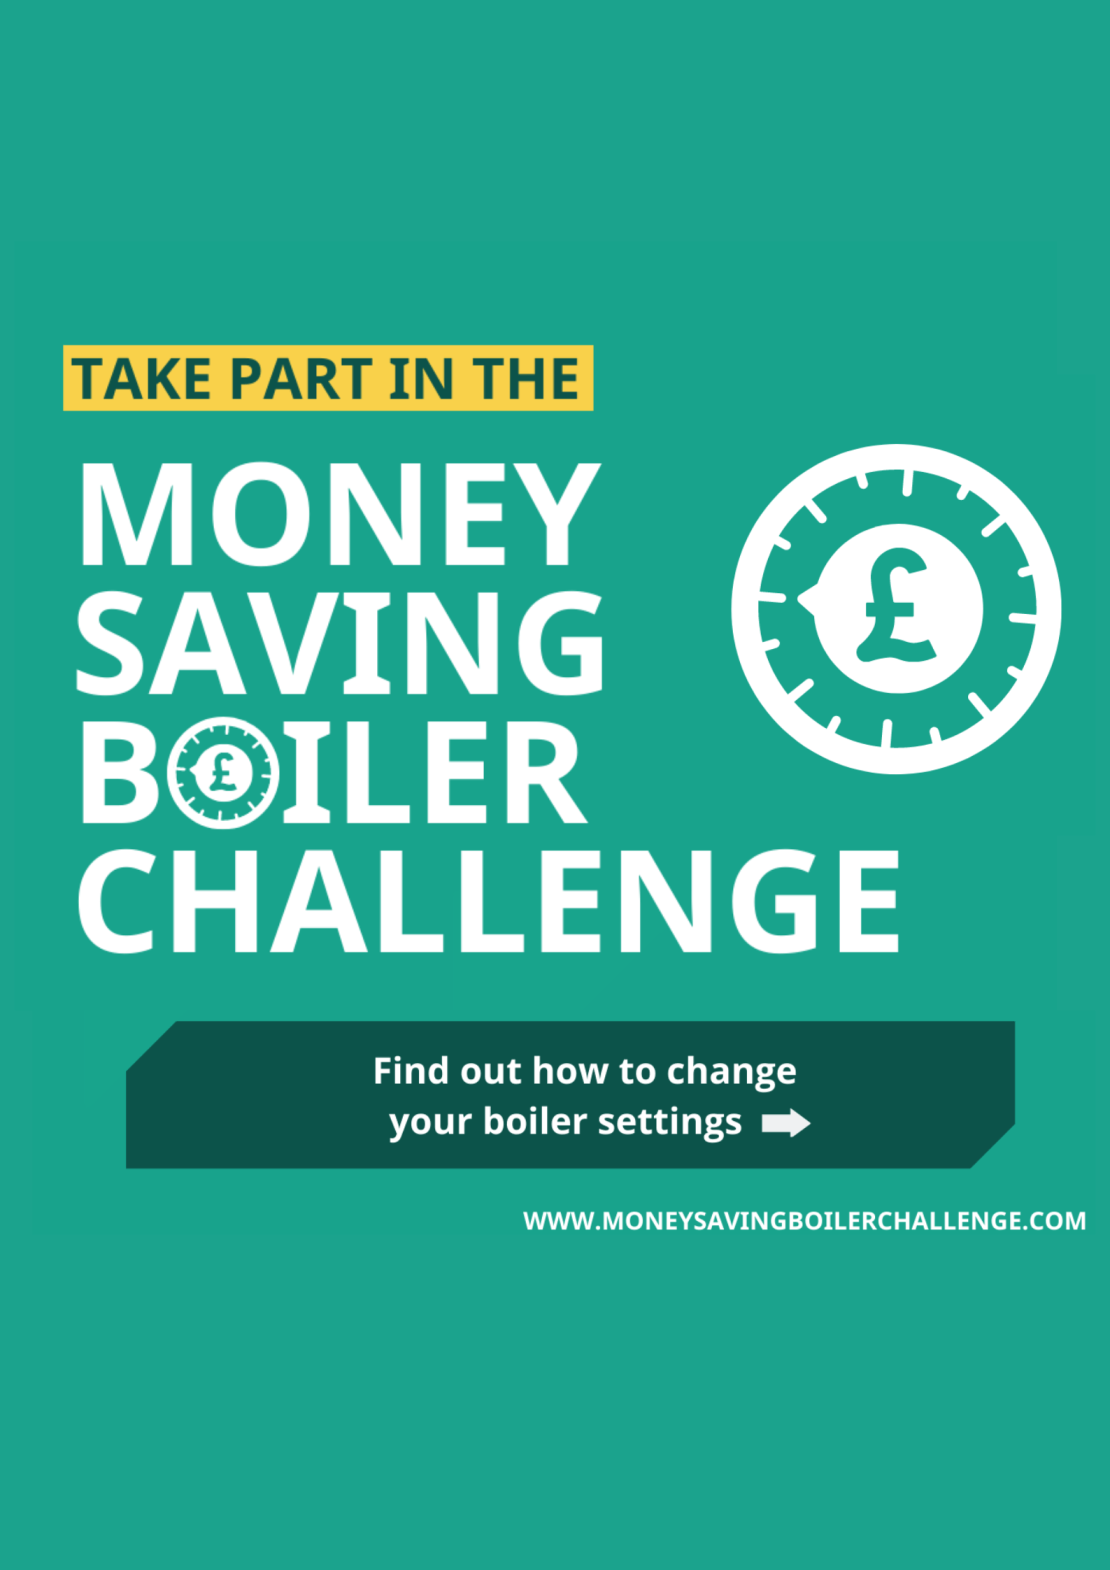 Take part in money saving boiler challenge